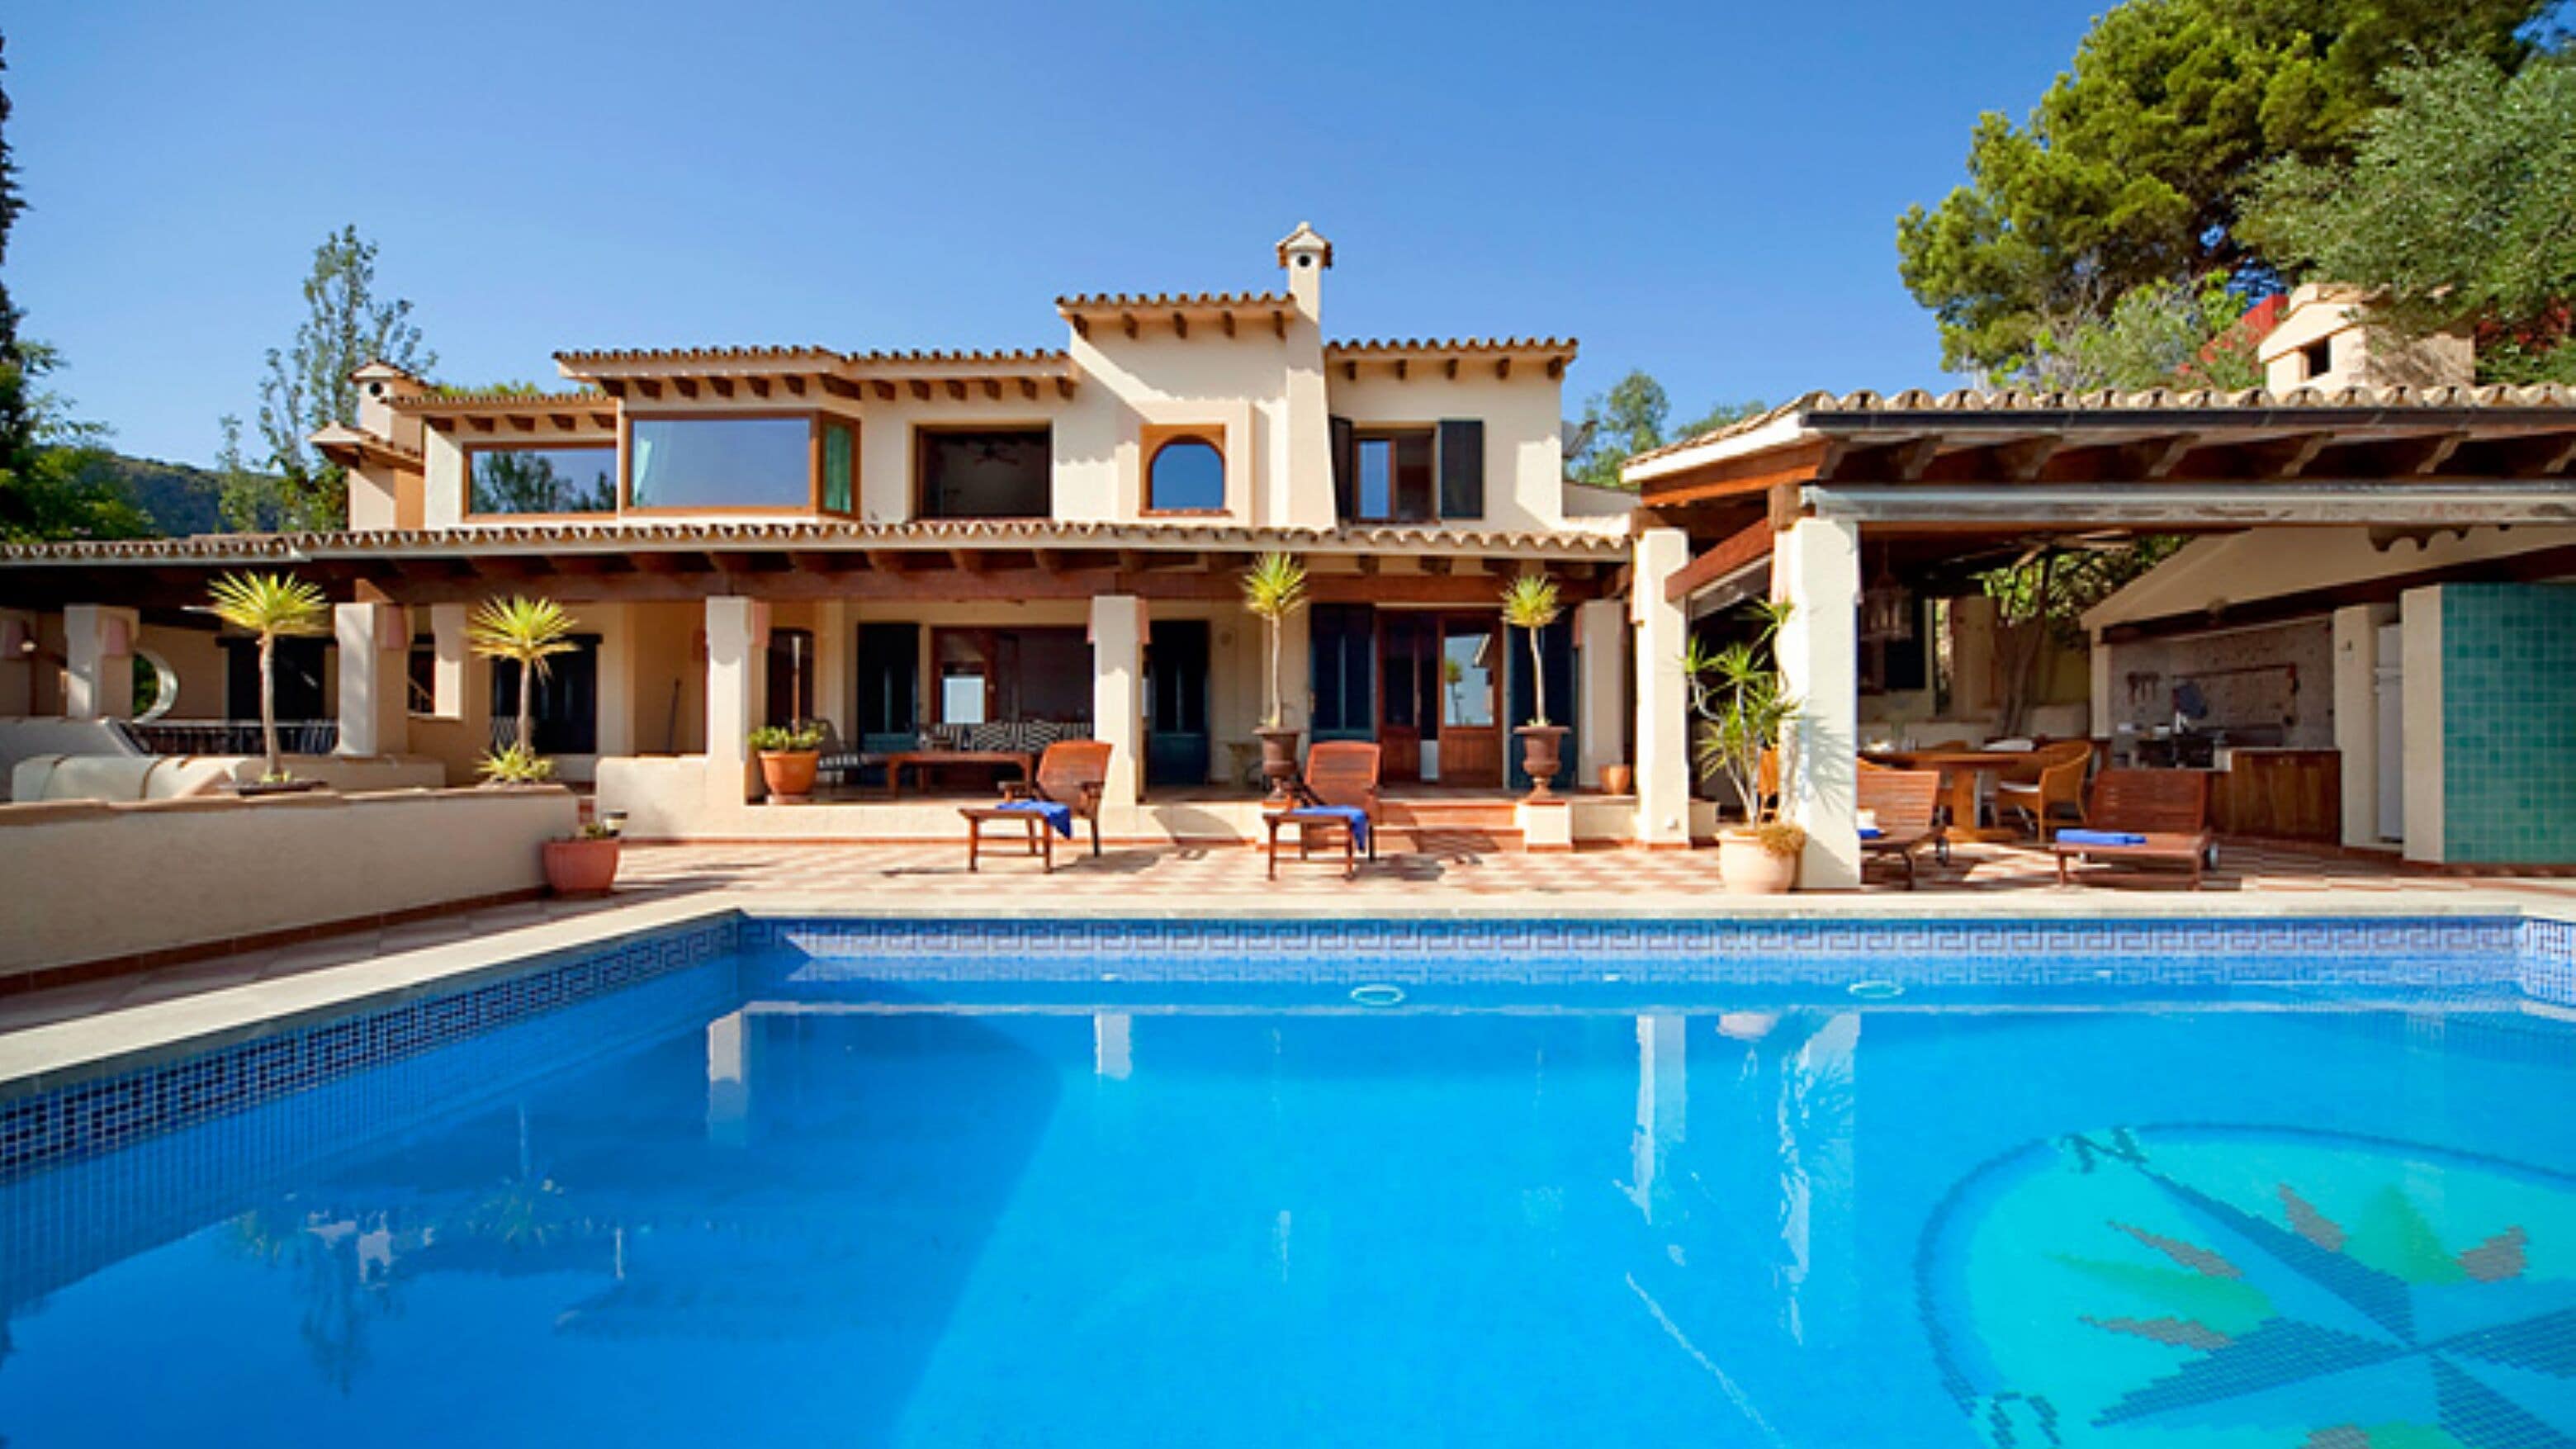 Ein Ferienhaus mit Pool in Spanien mieten